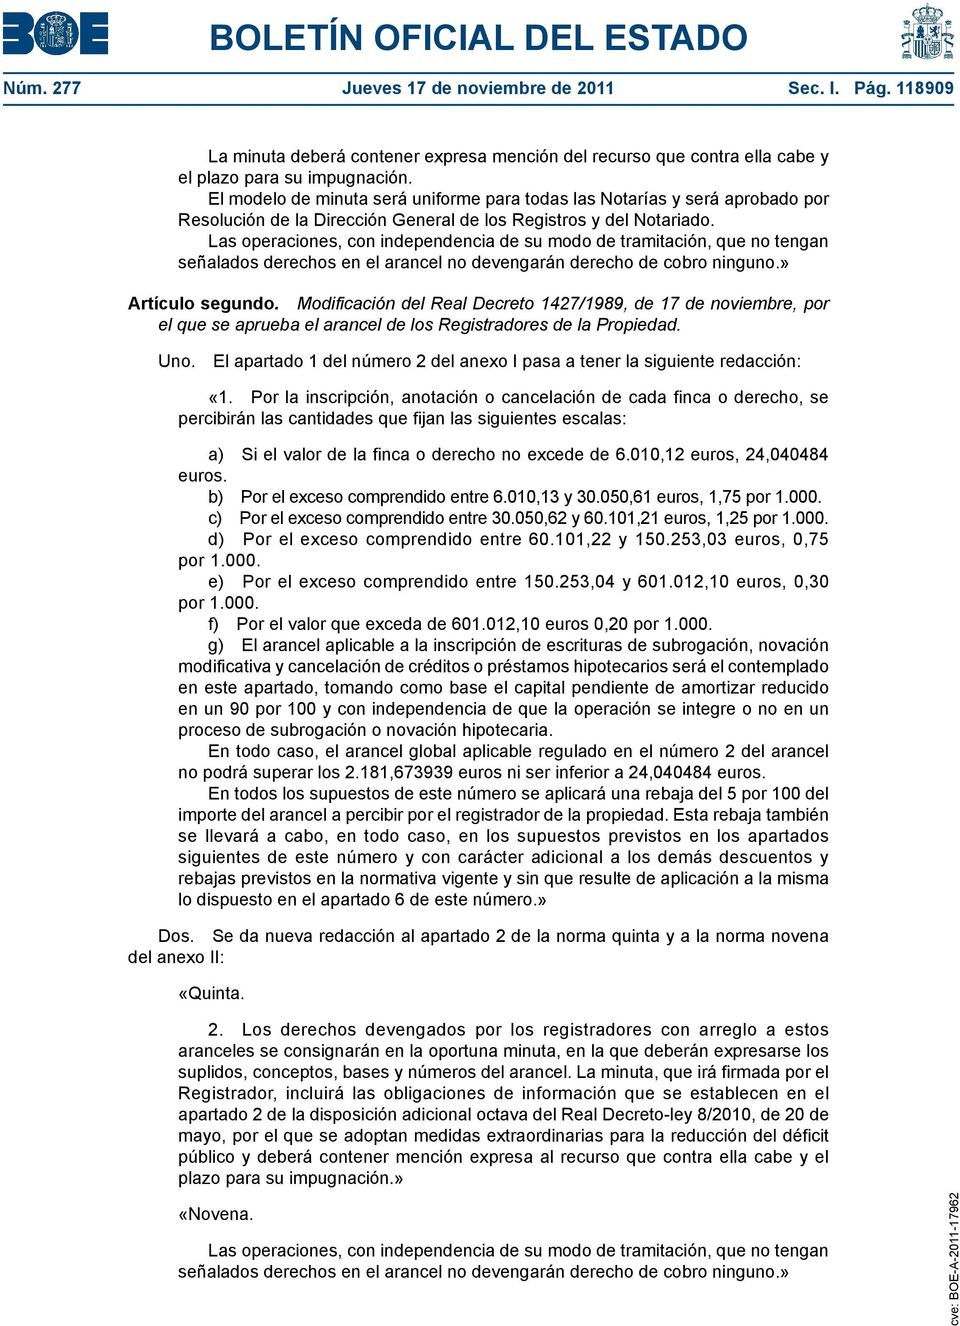 Modificación del Real Decreto 1427/1989, de 17 de noviembre, por el que se aprueba el arancel de los Registradores de la Propiedad. Uno.